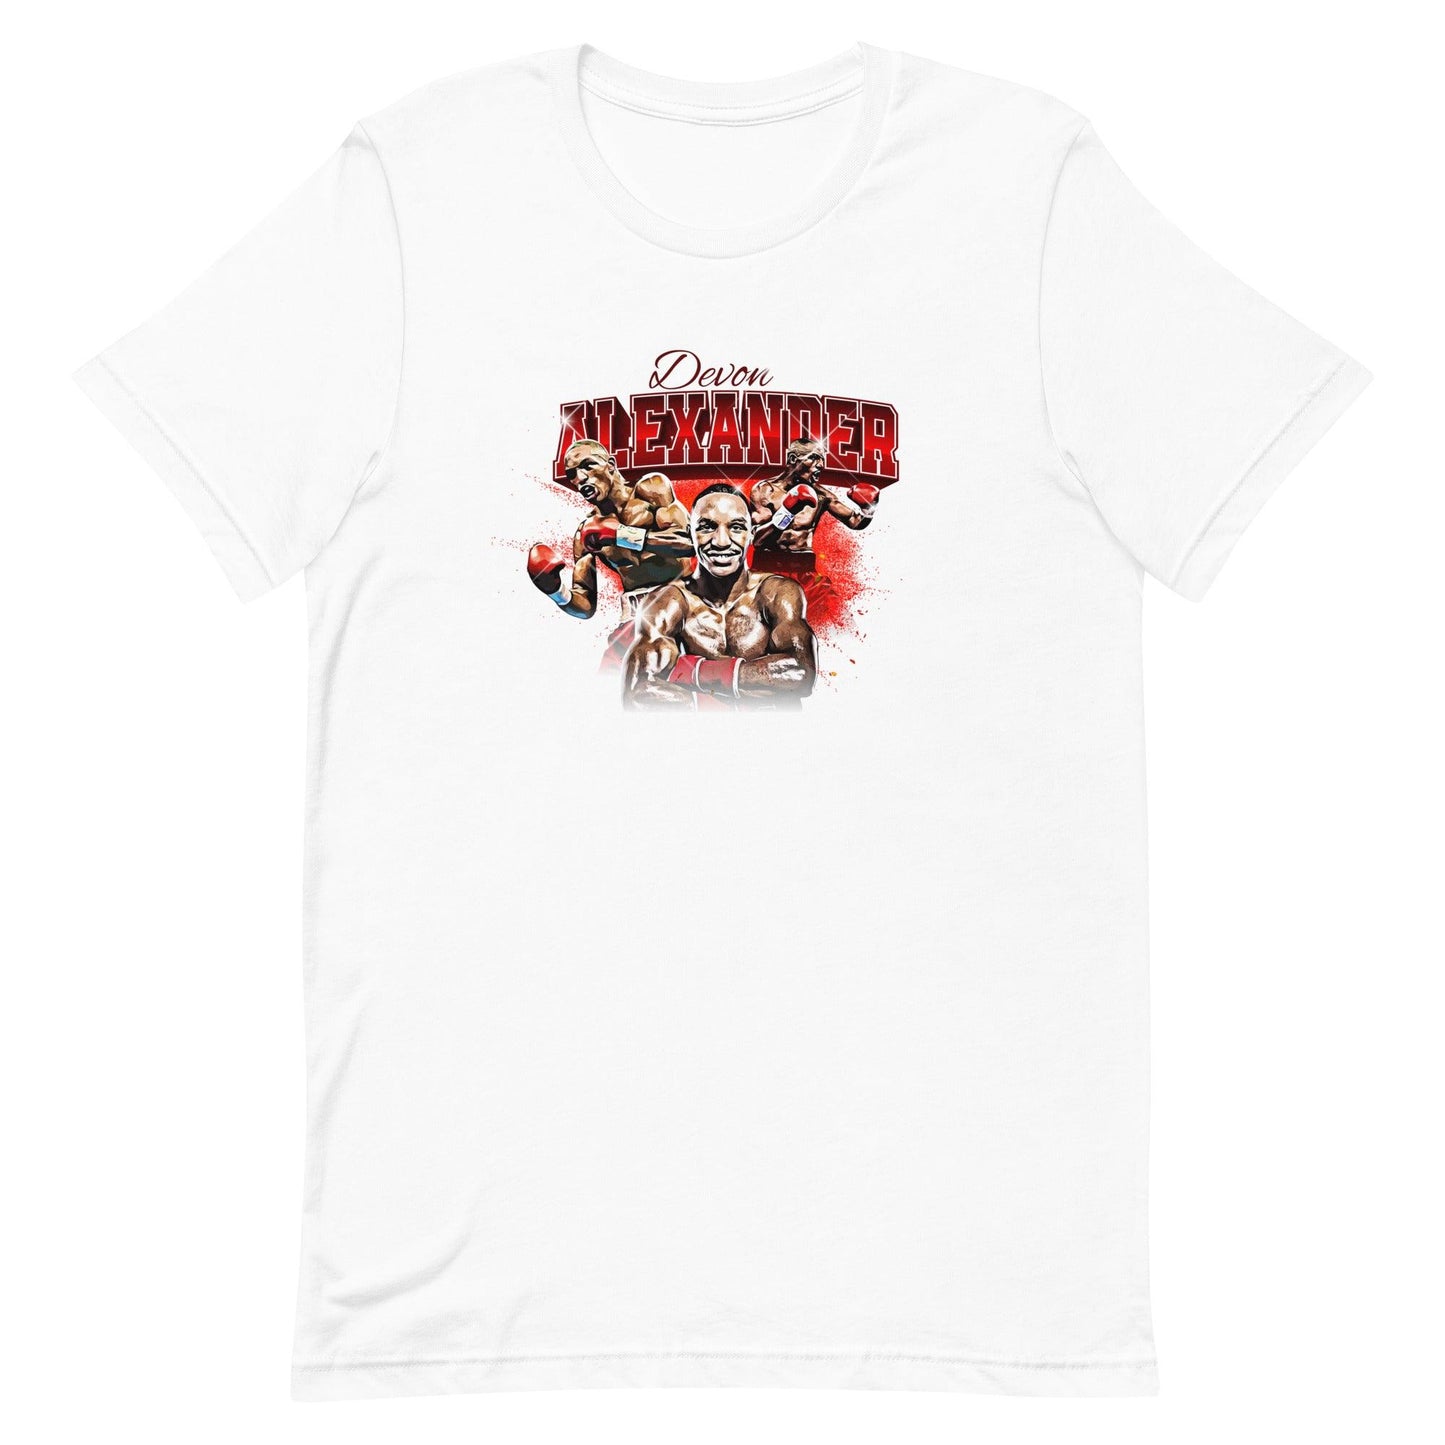 Devon Alexander "Limited Edition" t-shirt - Fan Arch